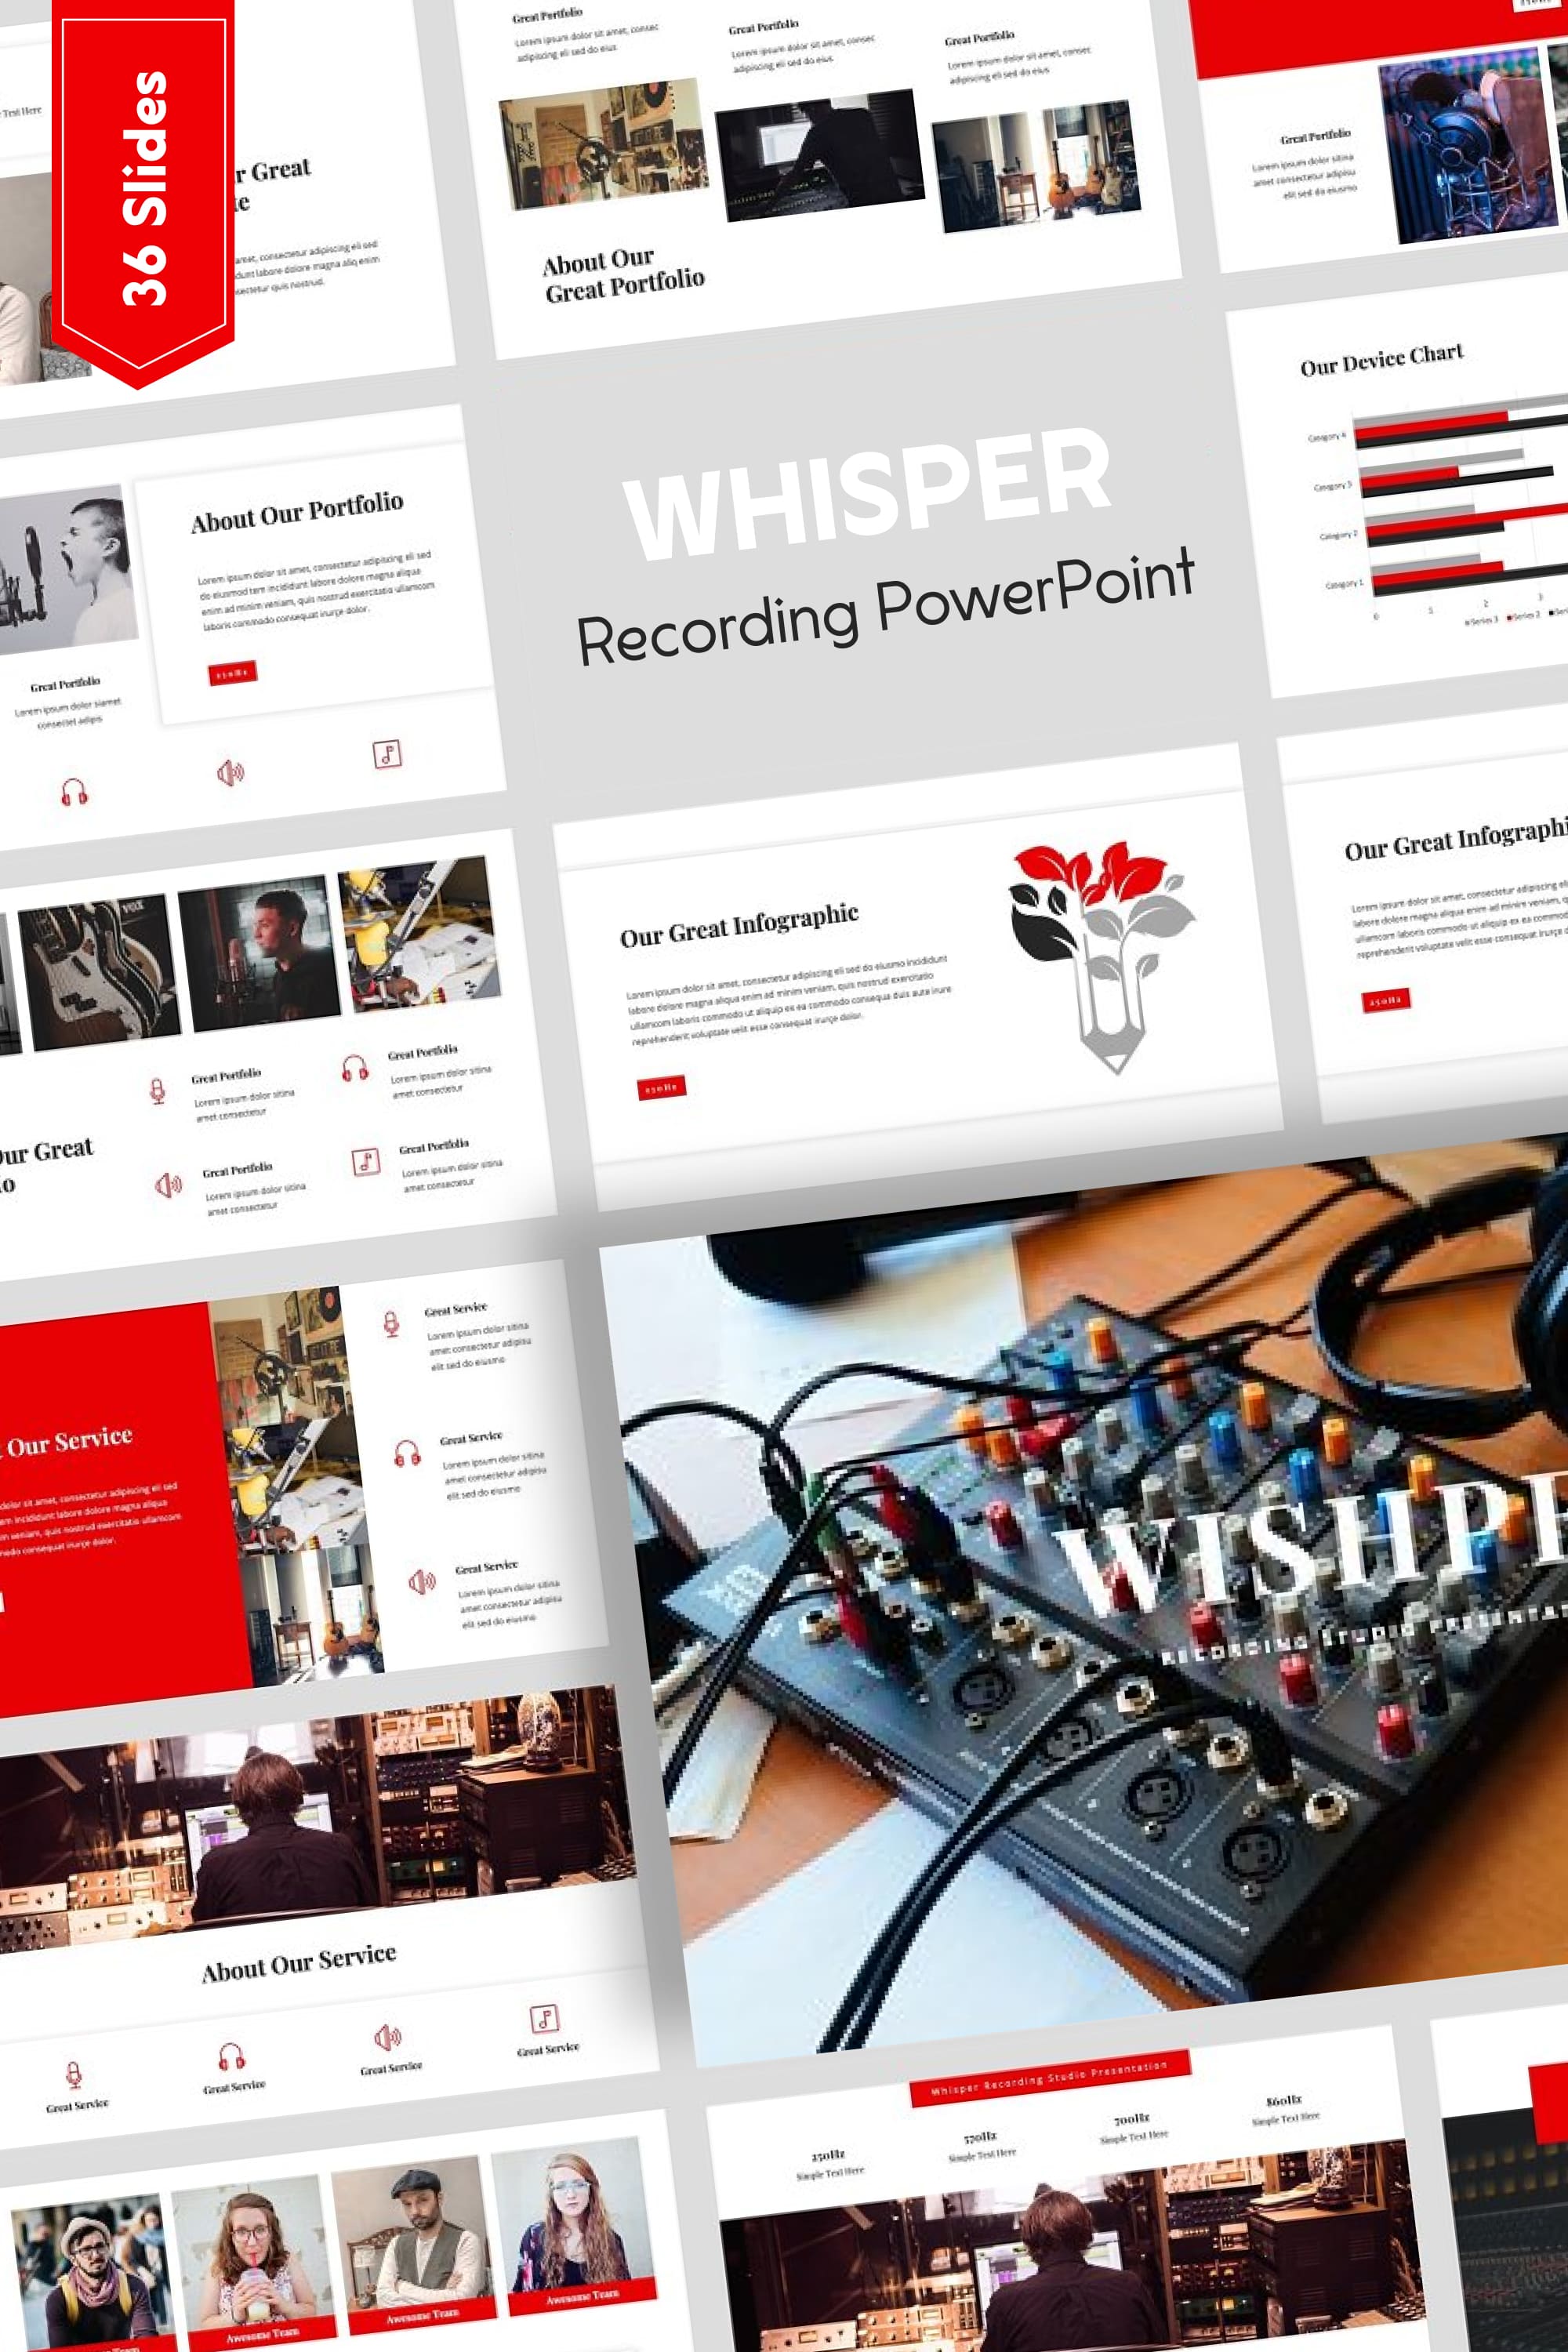 whisper recording powerpoint pinterest